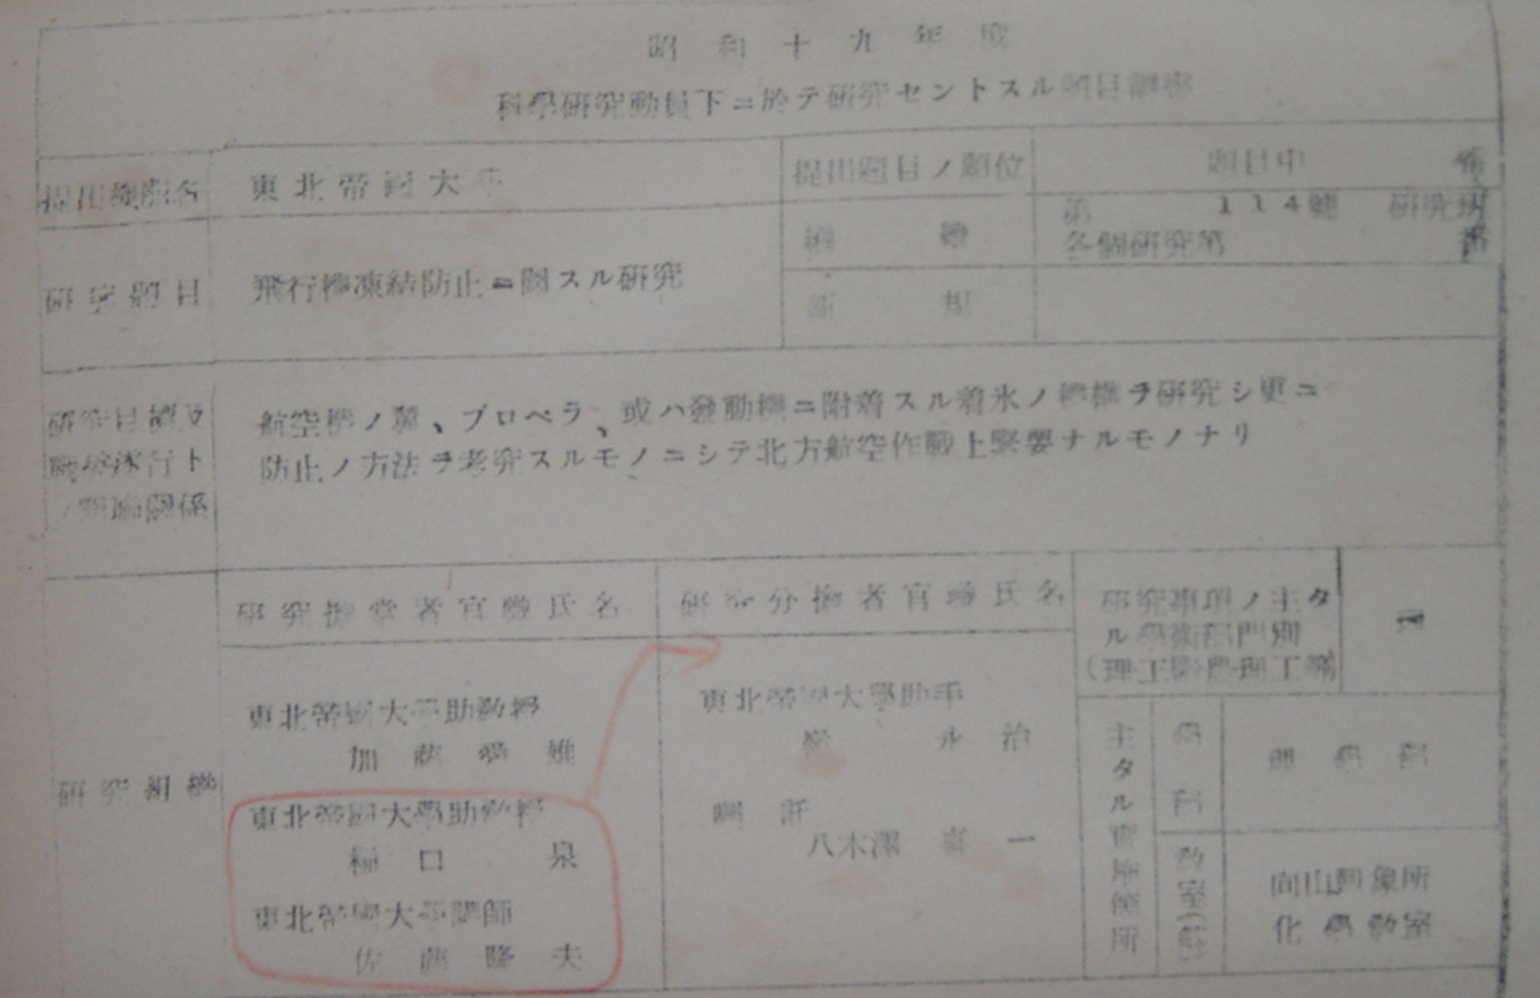 図３　昭和19年度の科研費申請書（大久保準三文書：東北大学史料館所蔵）の画像